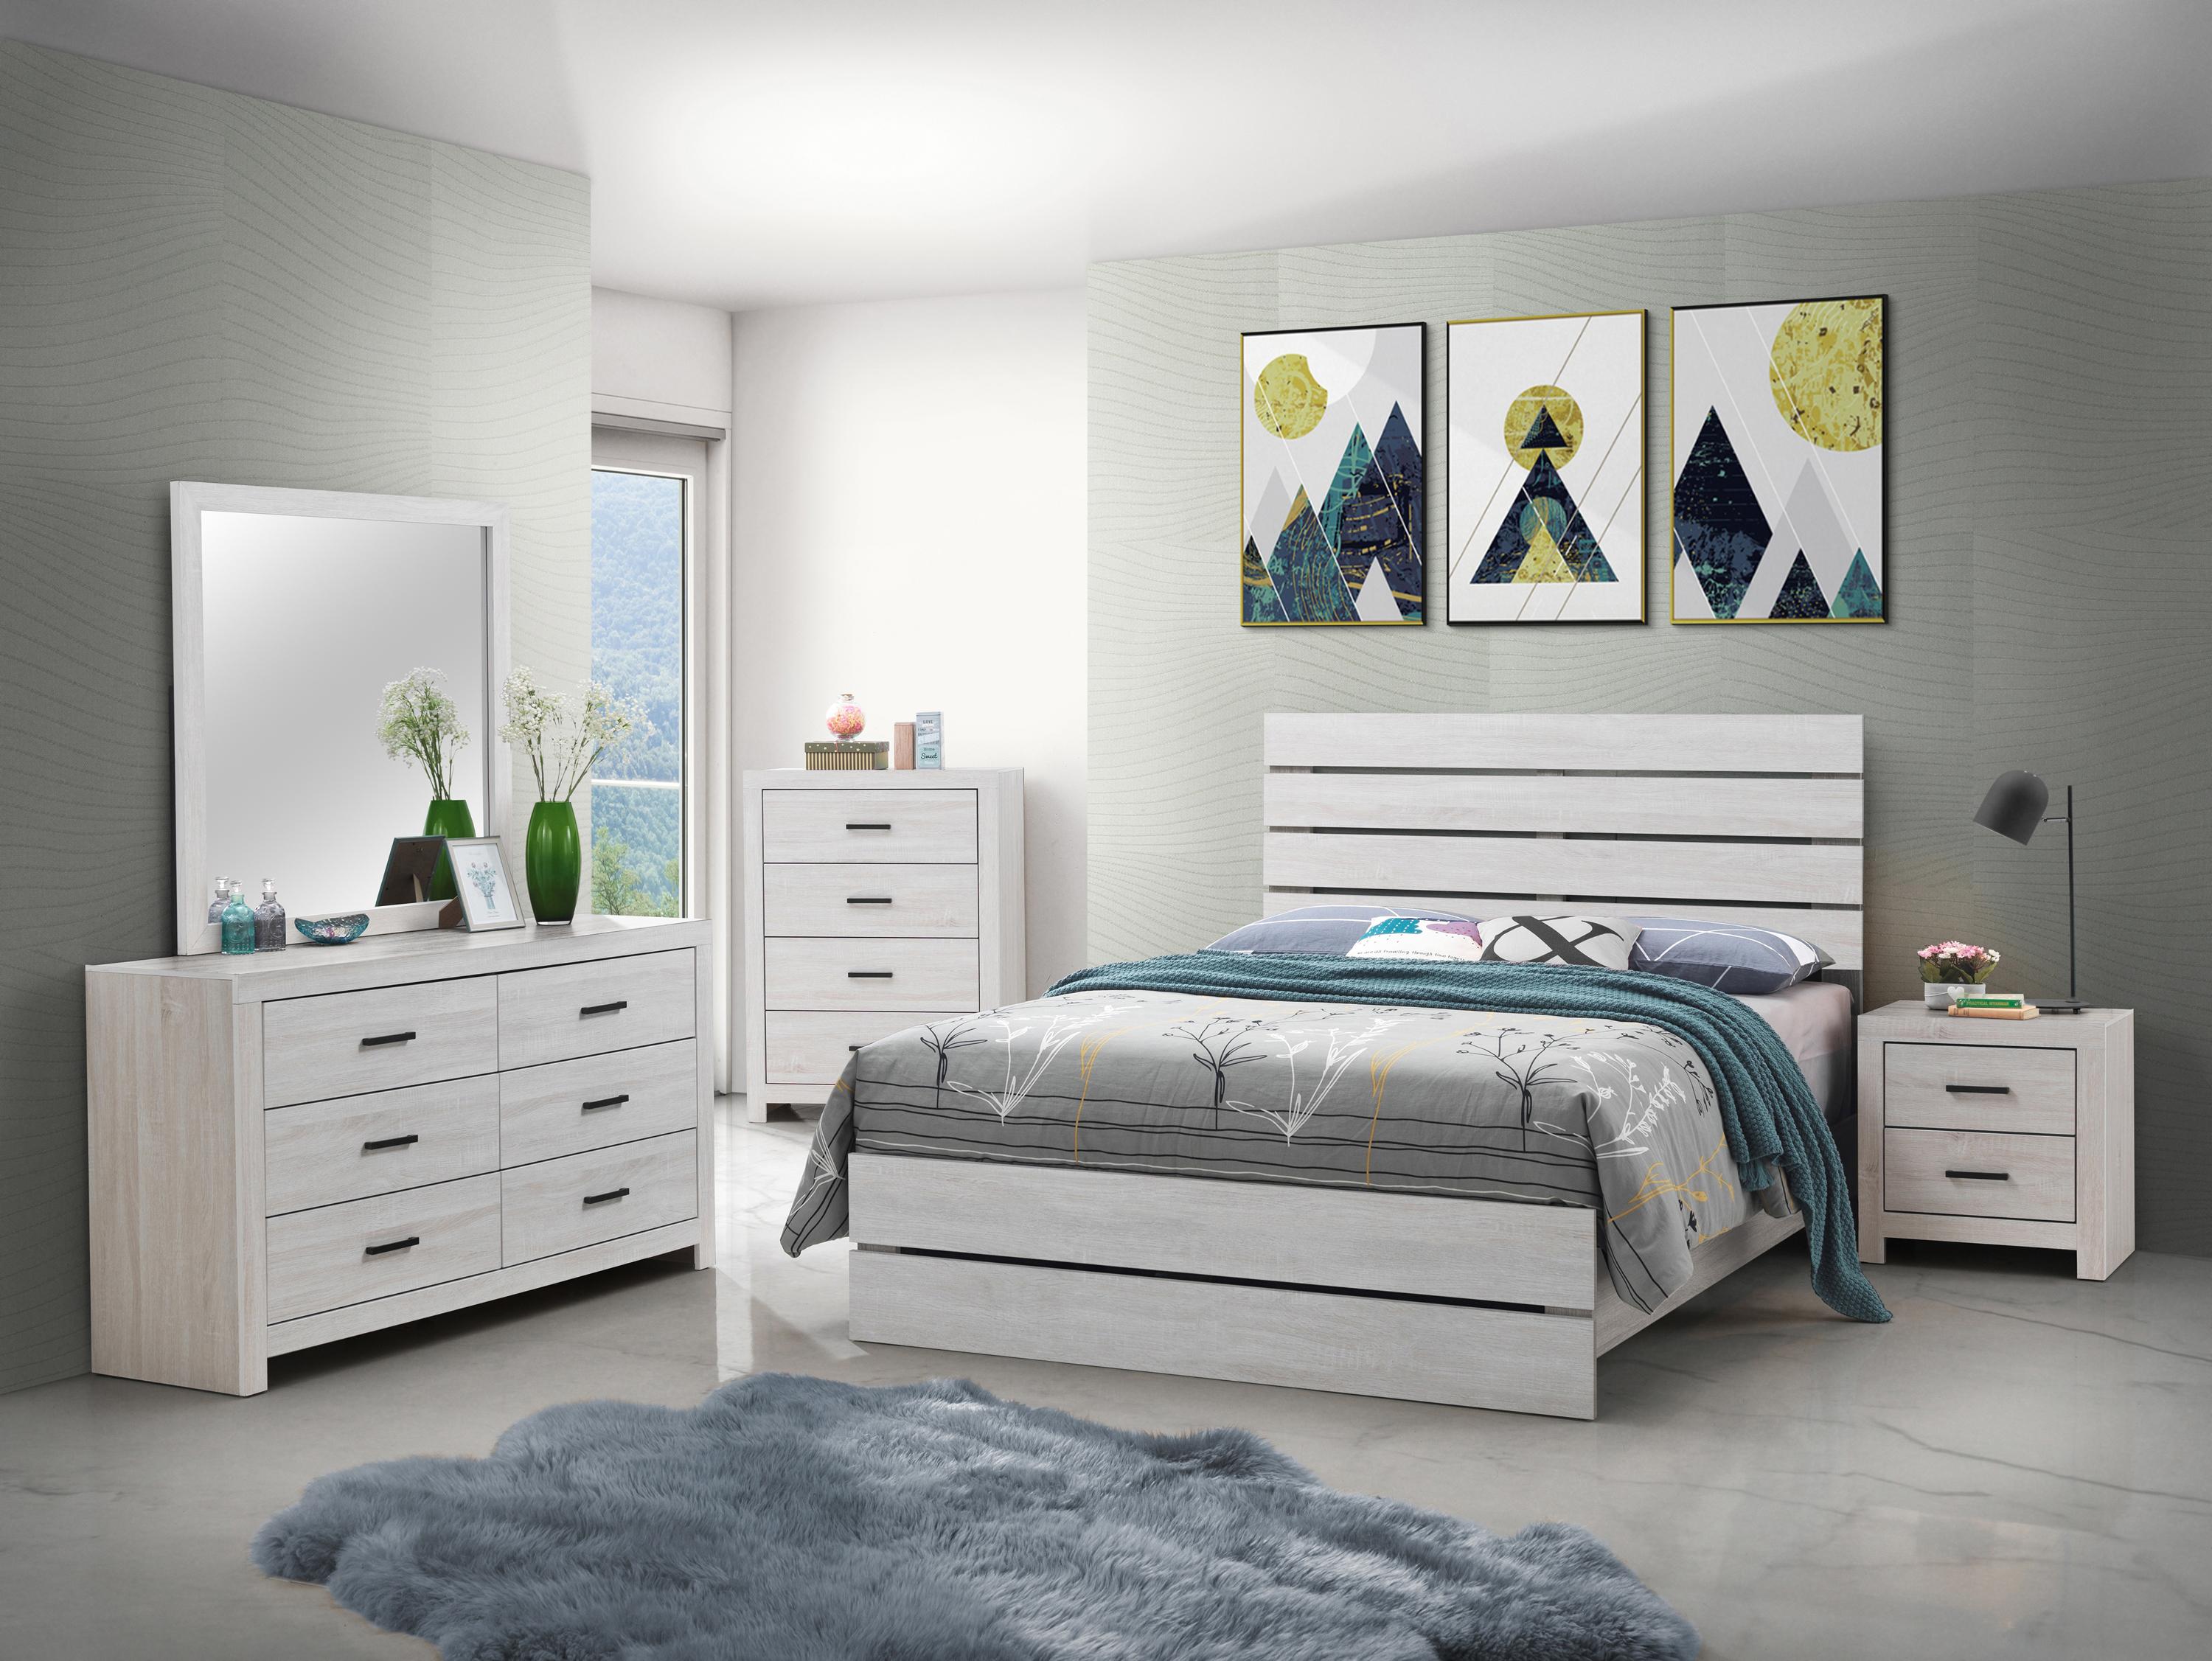 

    
Rustic Coastal White Wood Queen Panel Bedroom Set 6pcs Coaster 207051Q Marion
